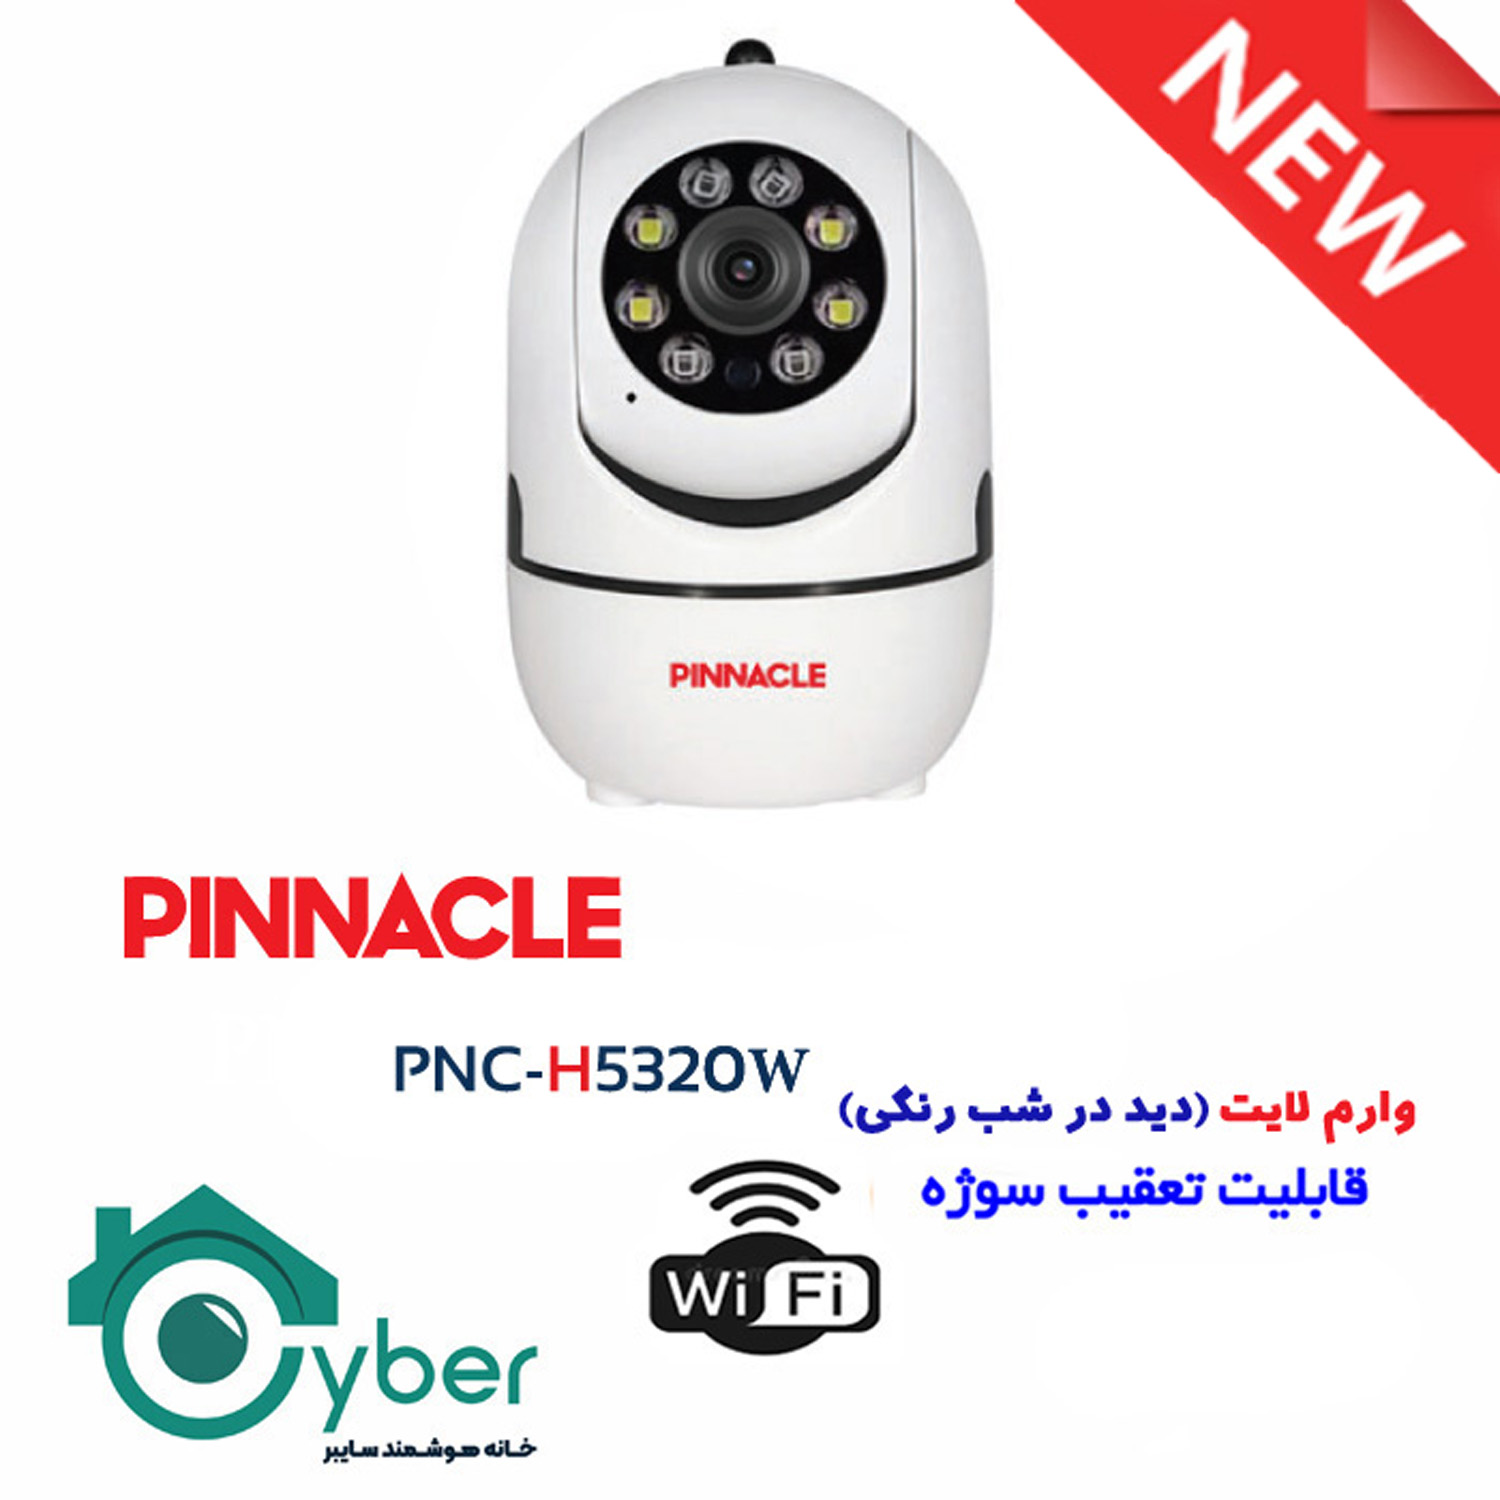 دوربین وای فای پیناکل PINNACLE مدل PNC-H5320W 3MP (24ماه گارانتی شرکتی)